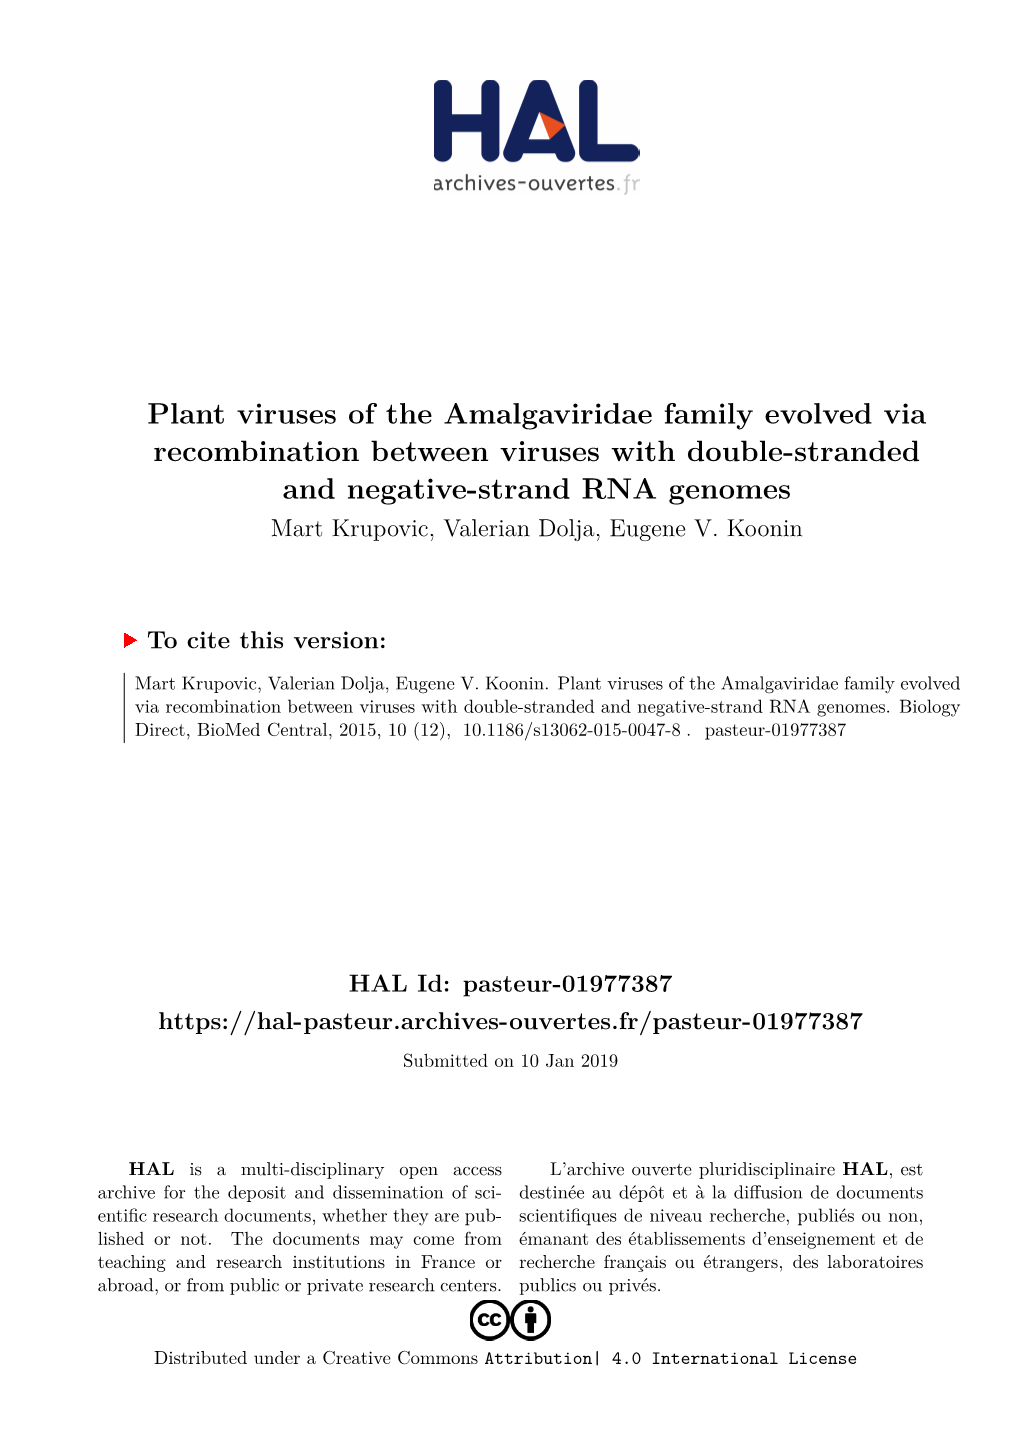 Plant Viruses of the Amalgaviridae Family Evolved Via